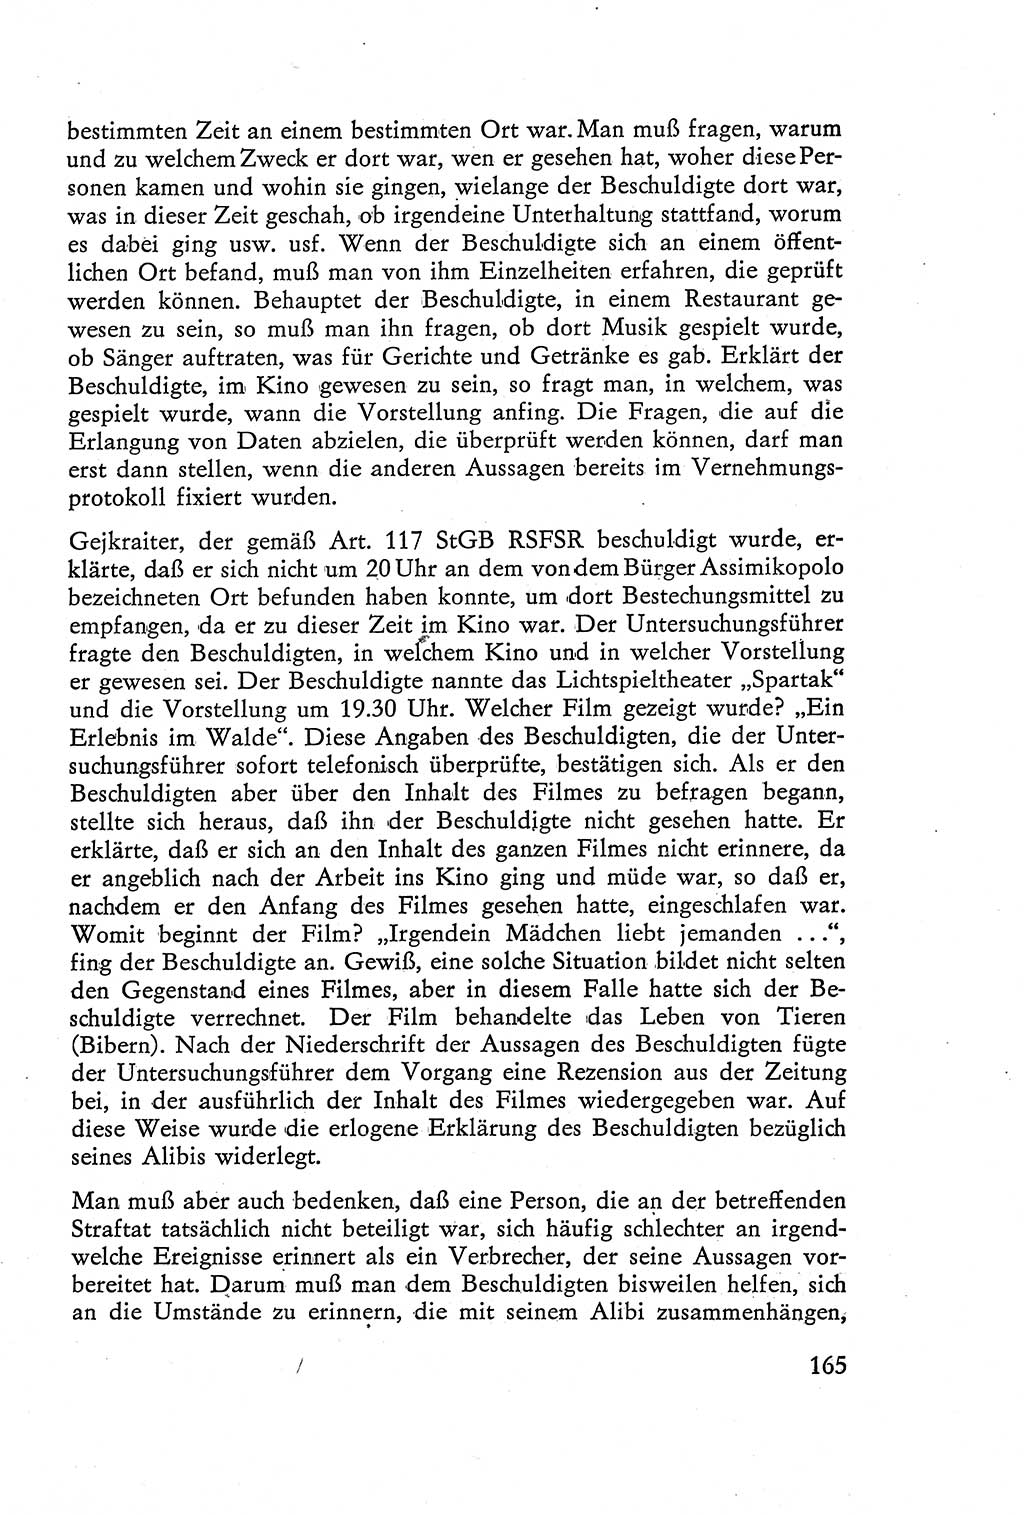 Die Vernehmung [Deutsche Demokratische Republik (DDR)] 1960, Seite 165 (Vern. DDR 1960, S. 165)